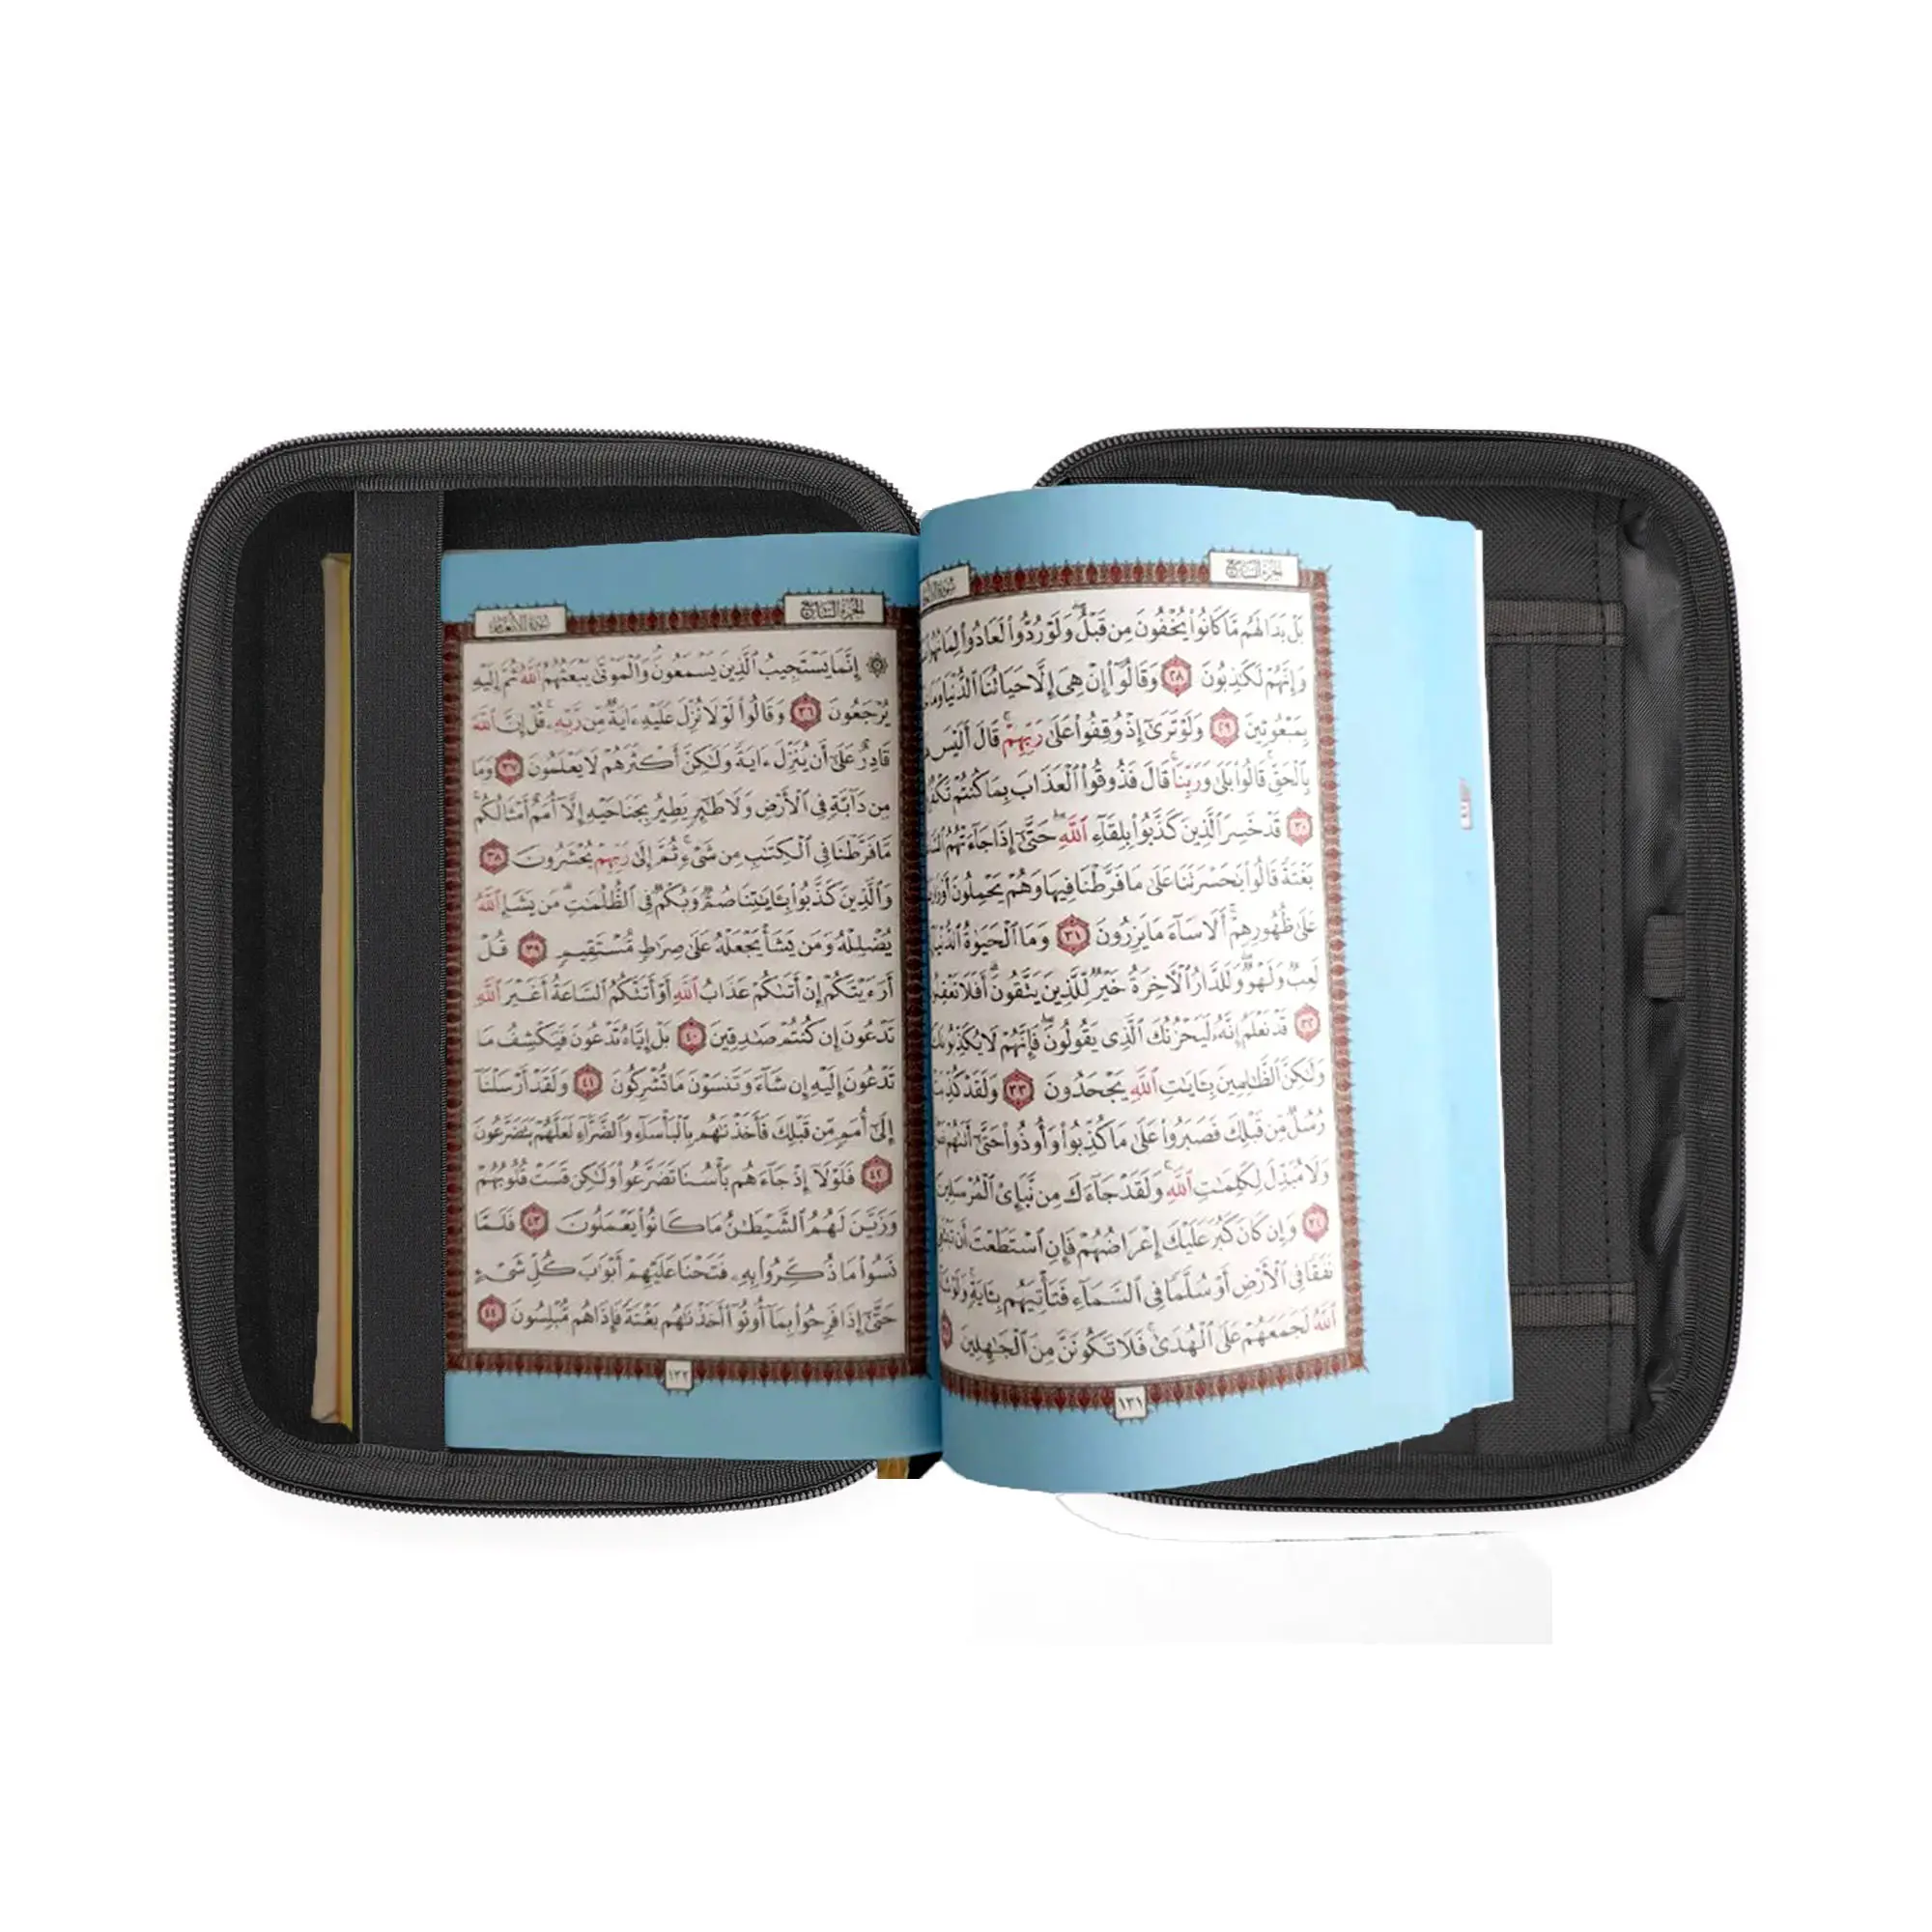 Benutzer definierte EVA Leder Filz Bibel Buch Trage tasche Cover Tasche mit Reiß verschluss